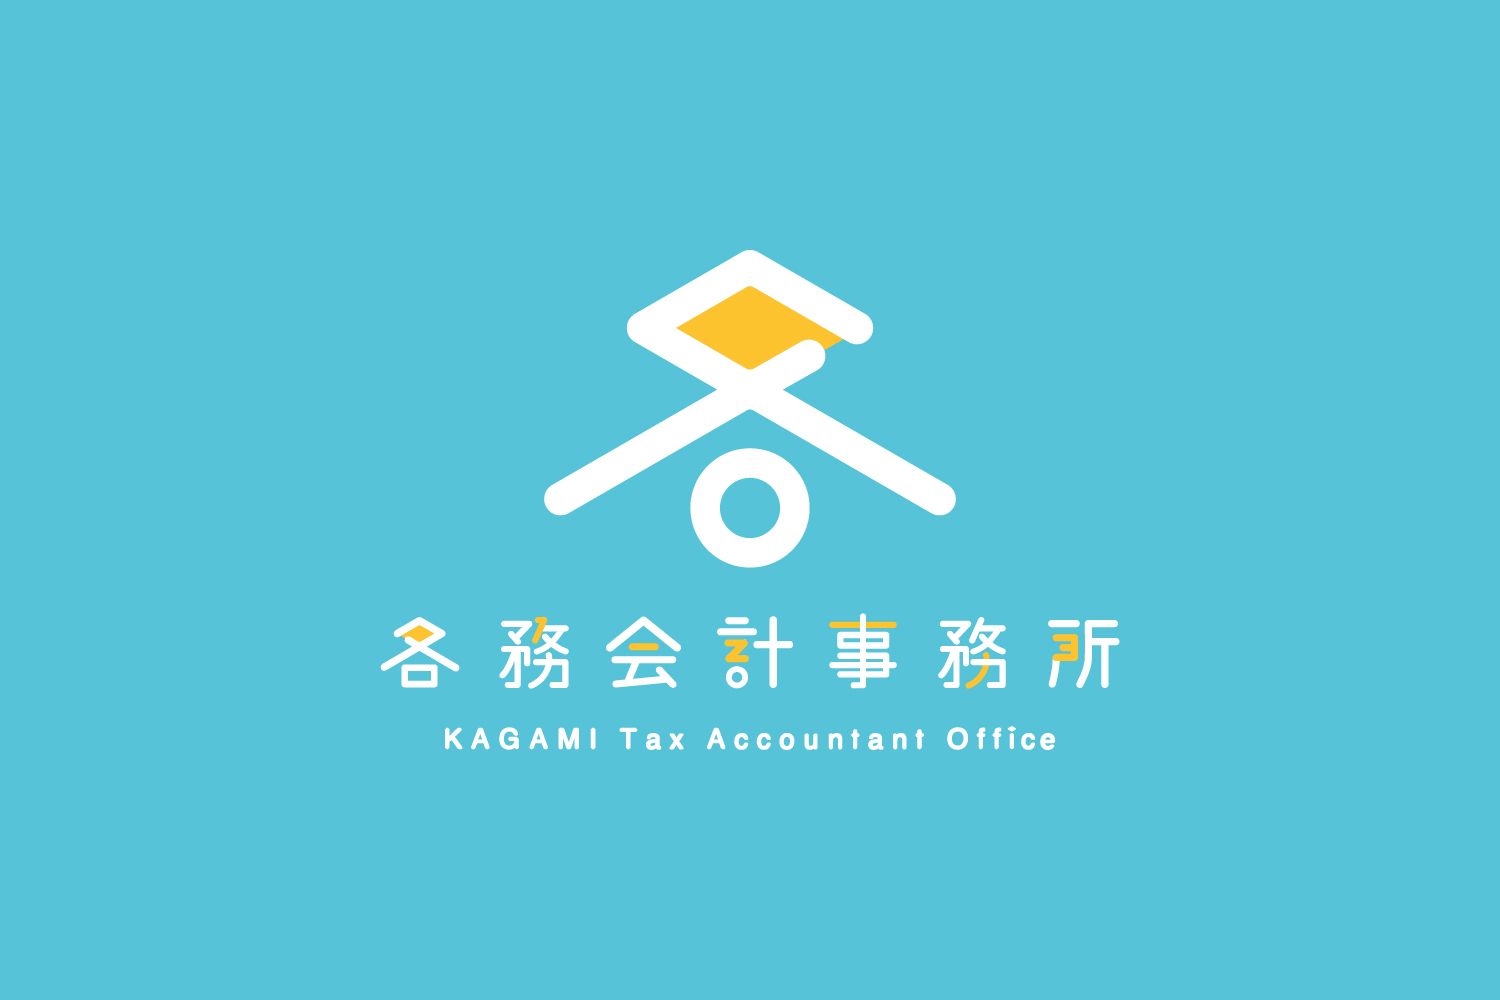 税理士事務所のロゴマークデザイン